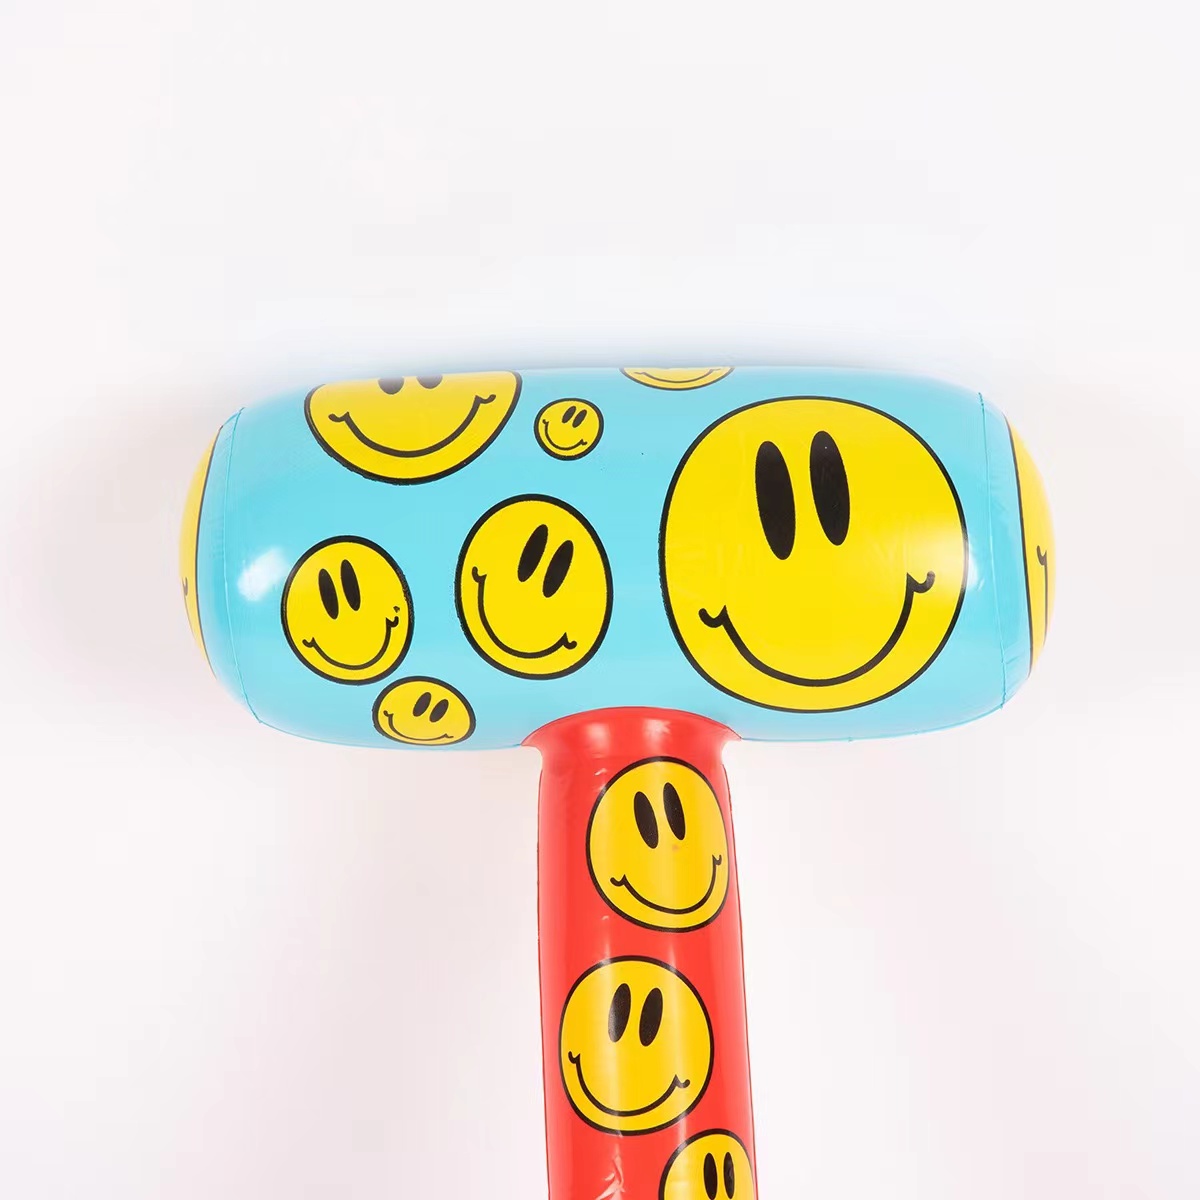 厂家PVC玩具 儿童玩具 充气锤子 笑脸 无伤力道具 棒槌玩具详情2